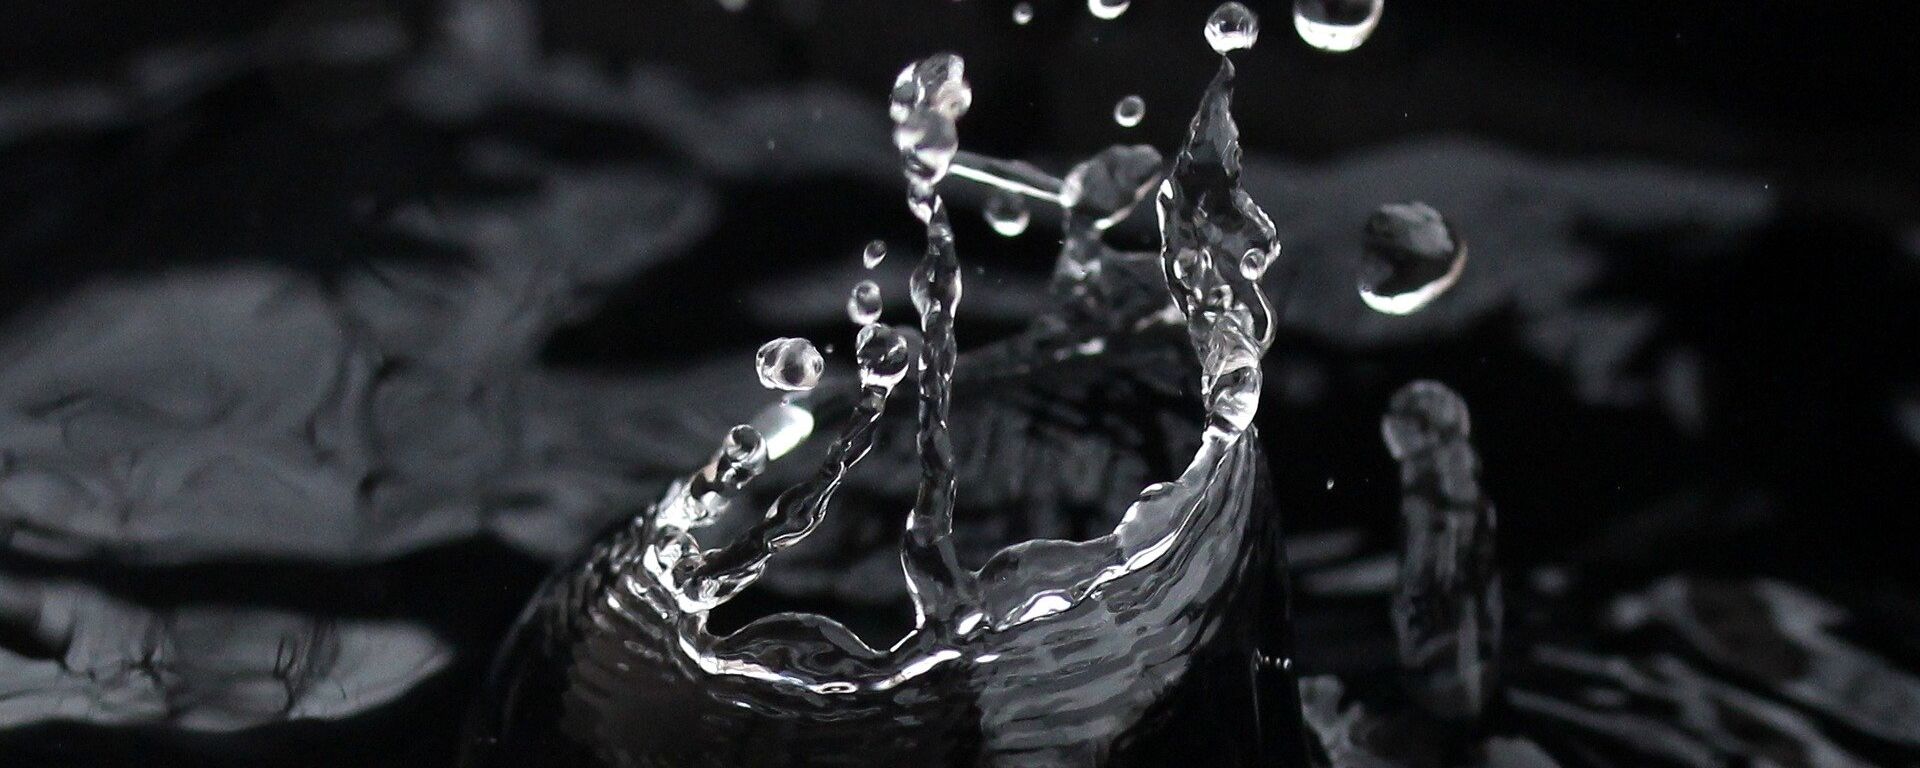 Agua potable, imagen referencial - Sputnik Mundo, 1920, 04.11.2021